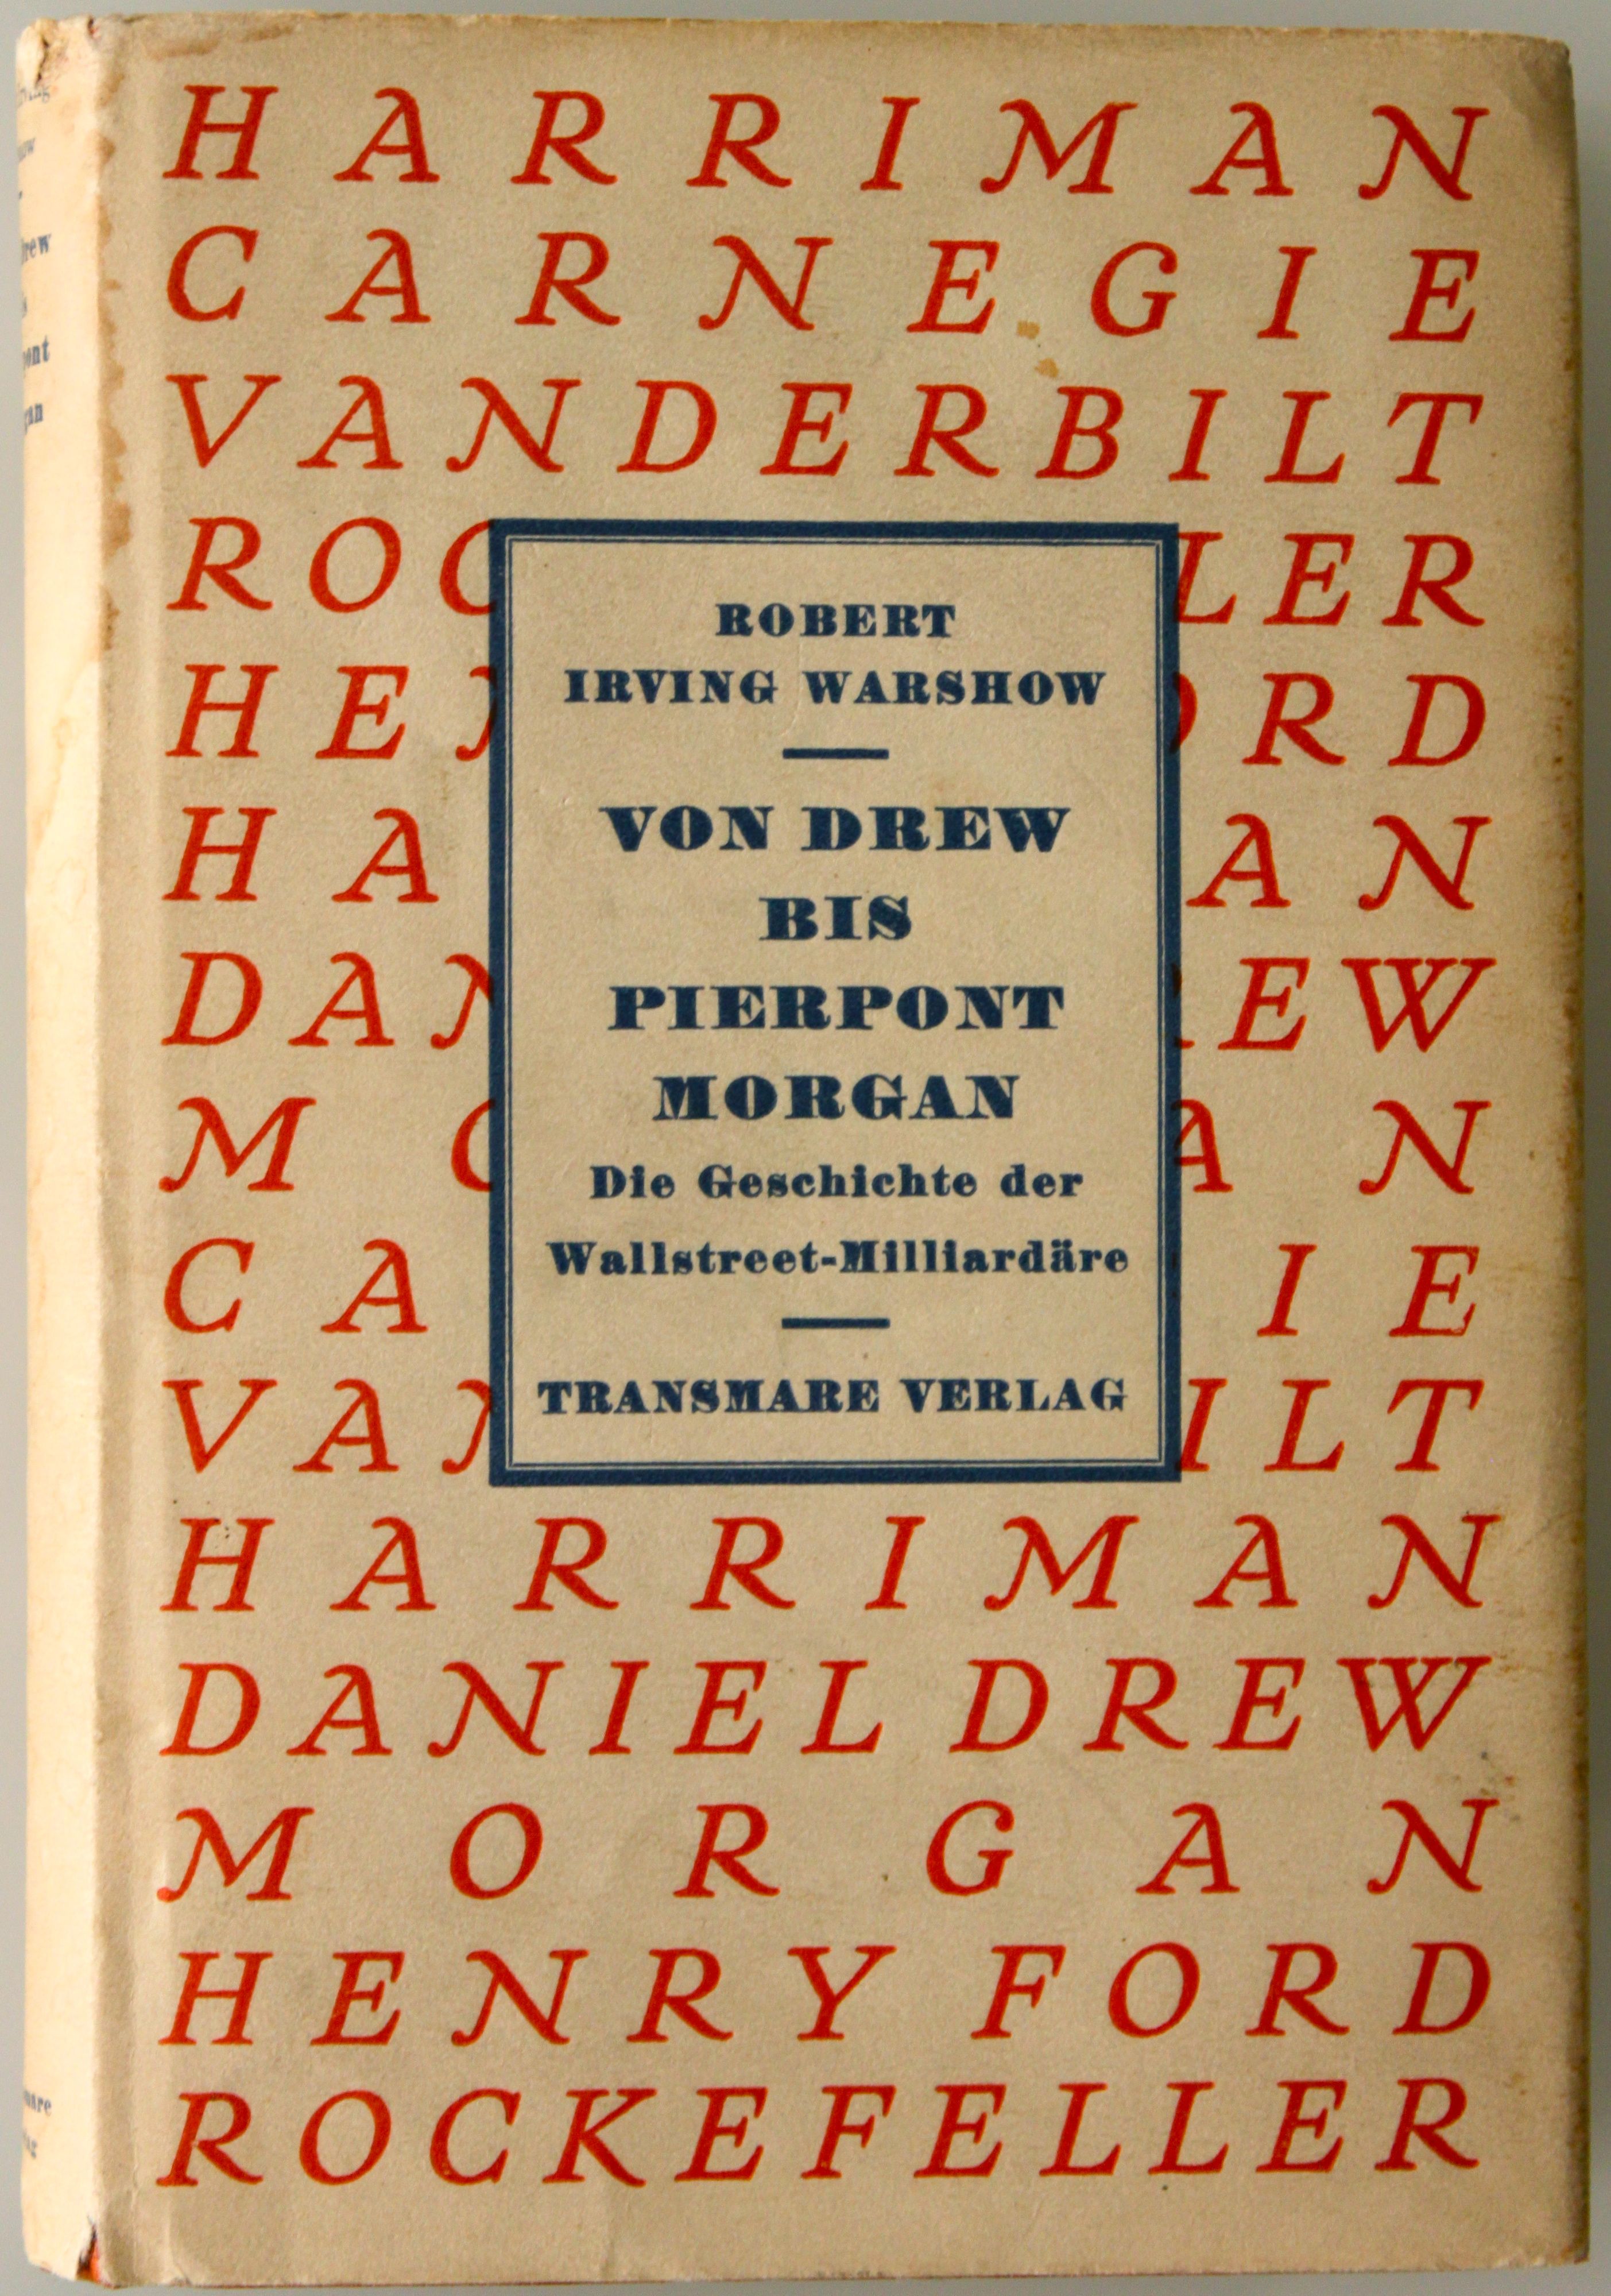 Warshow, Von Drew bis Pierpont Morgan. Transmare, 1931